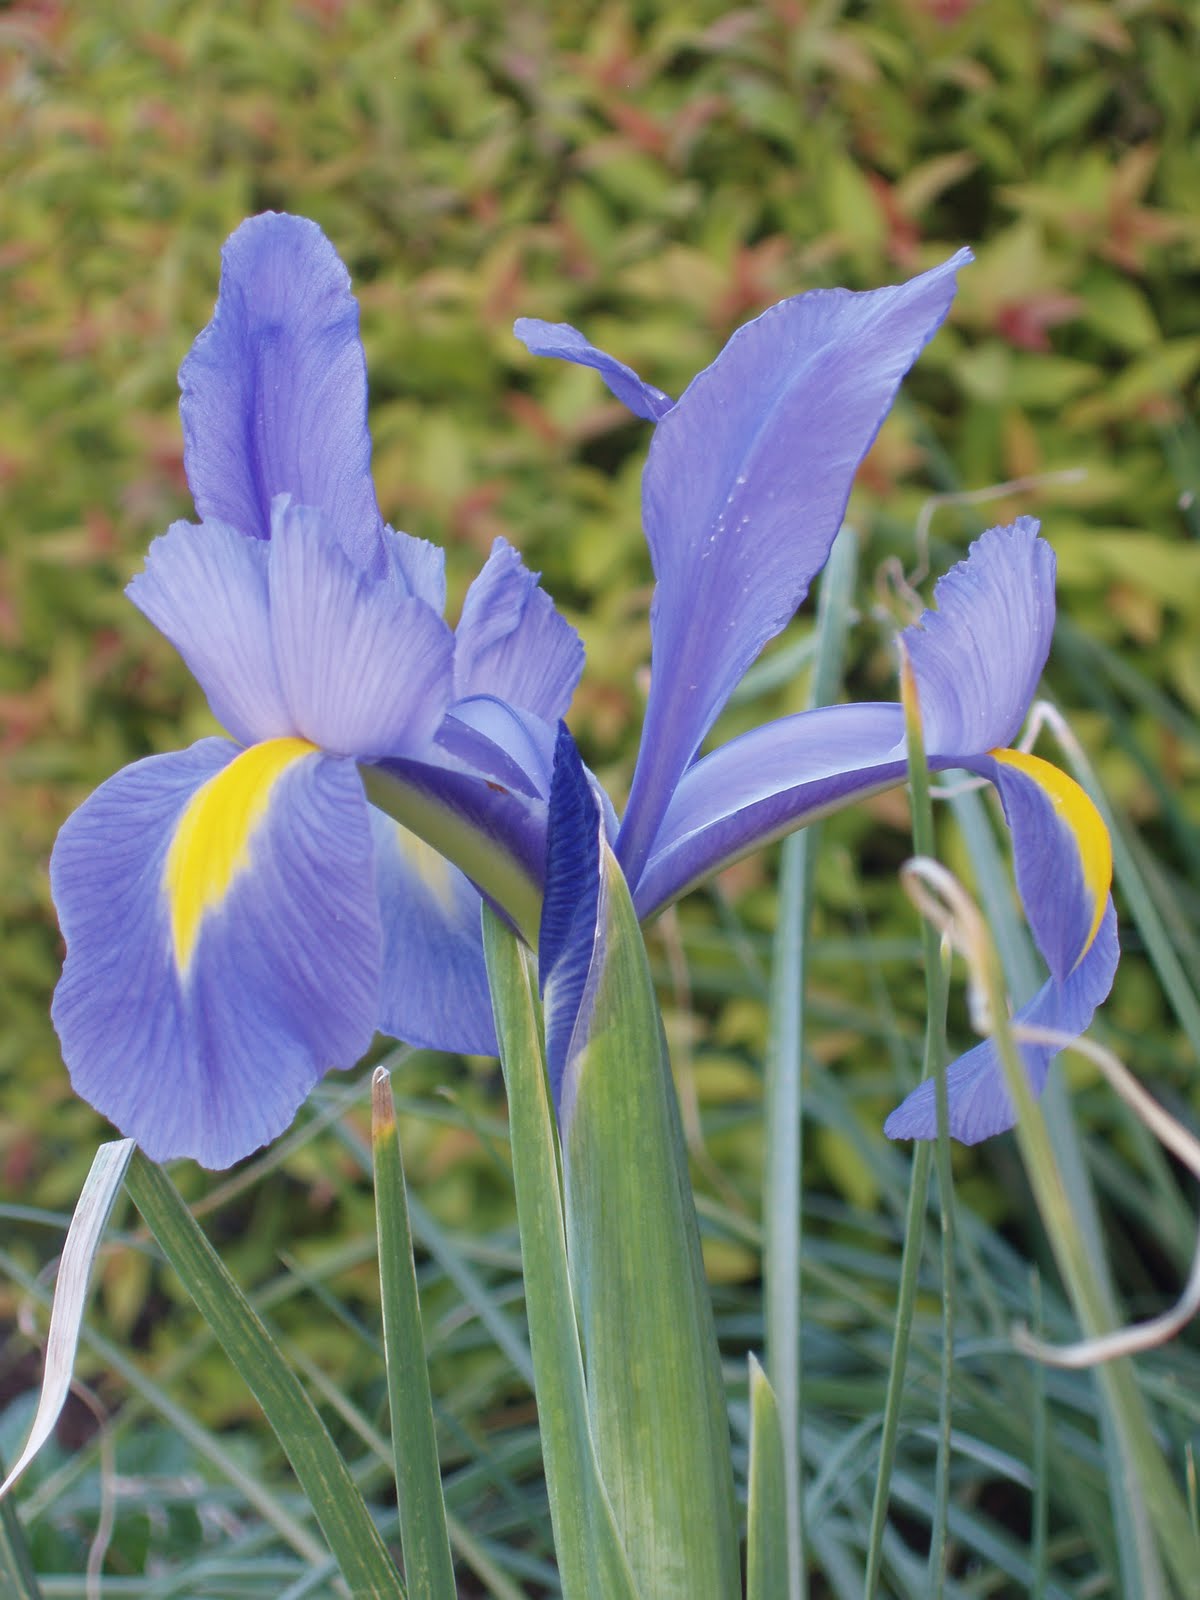 Iris Flower Quotes. QuotesGram